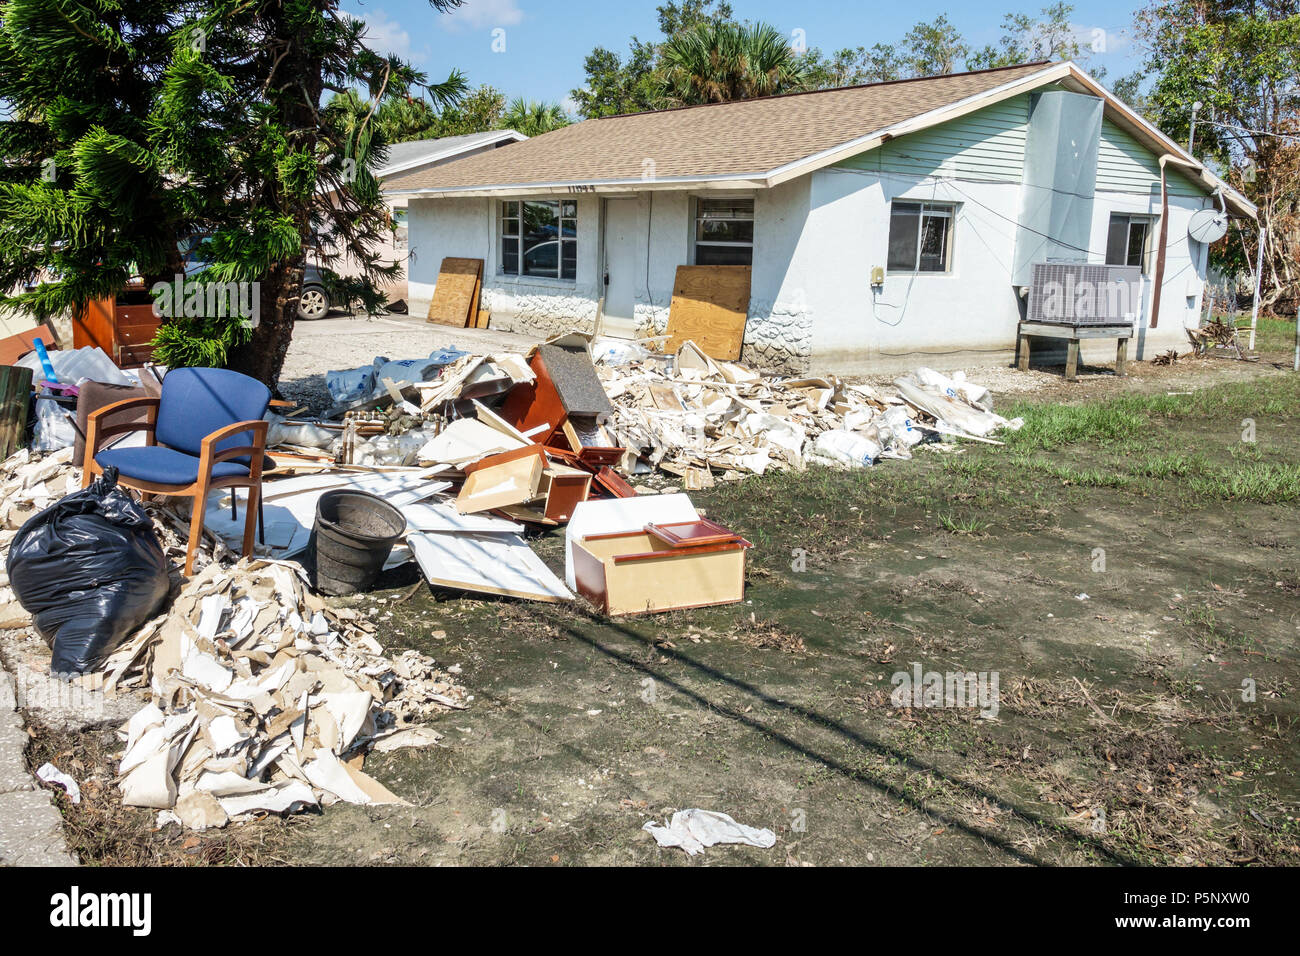 Floride,Bonita Springs,après l'ouragan Irma tempête dégâts d'eau après la destruction, inondations, maisons maison maison, cour avant, débris pile de déchets, inondation dep Banque D'Images